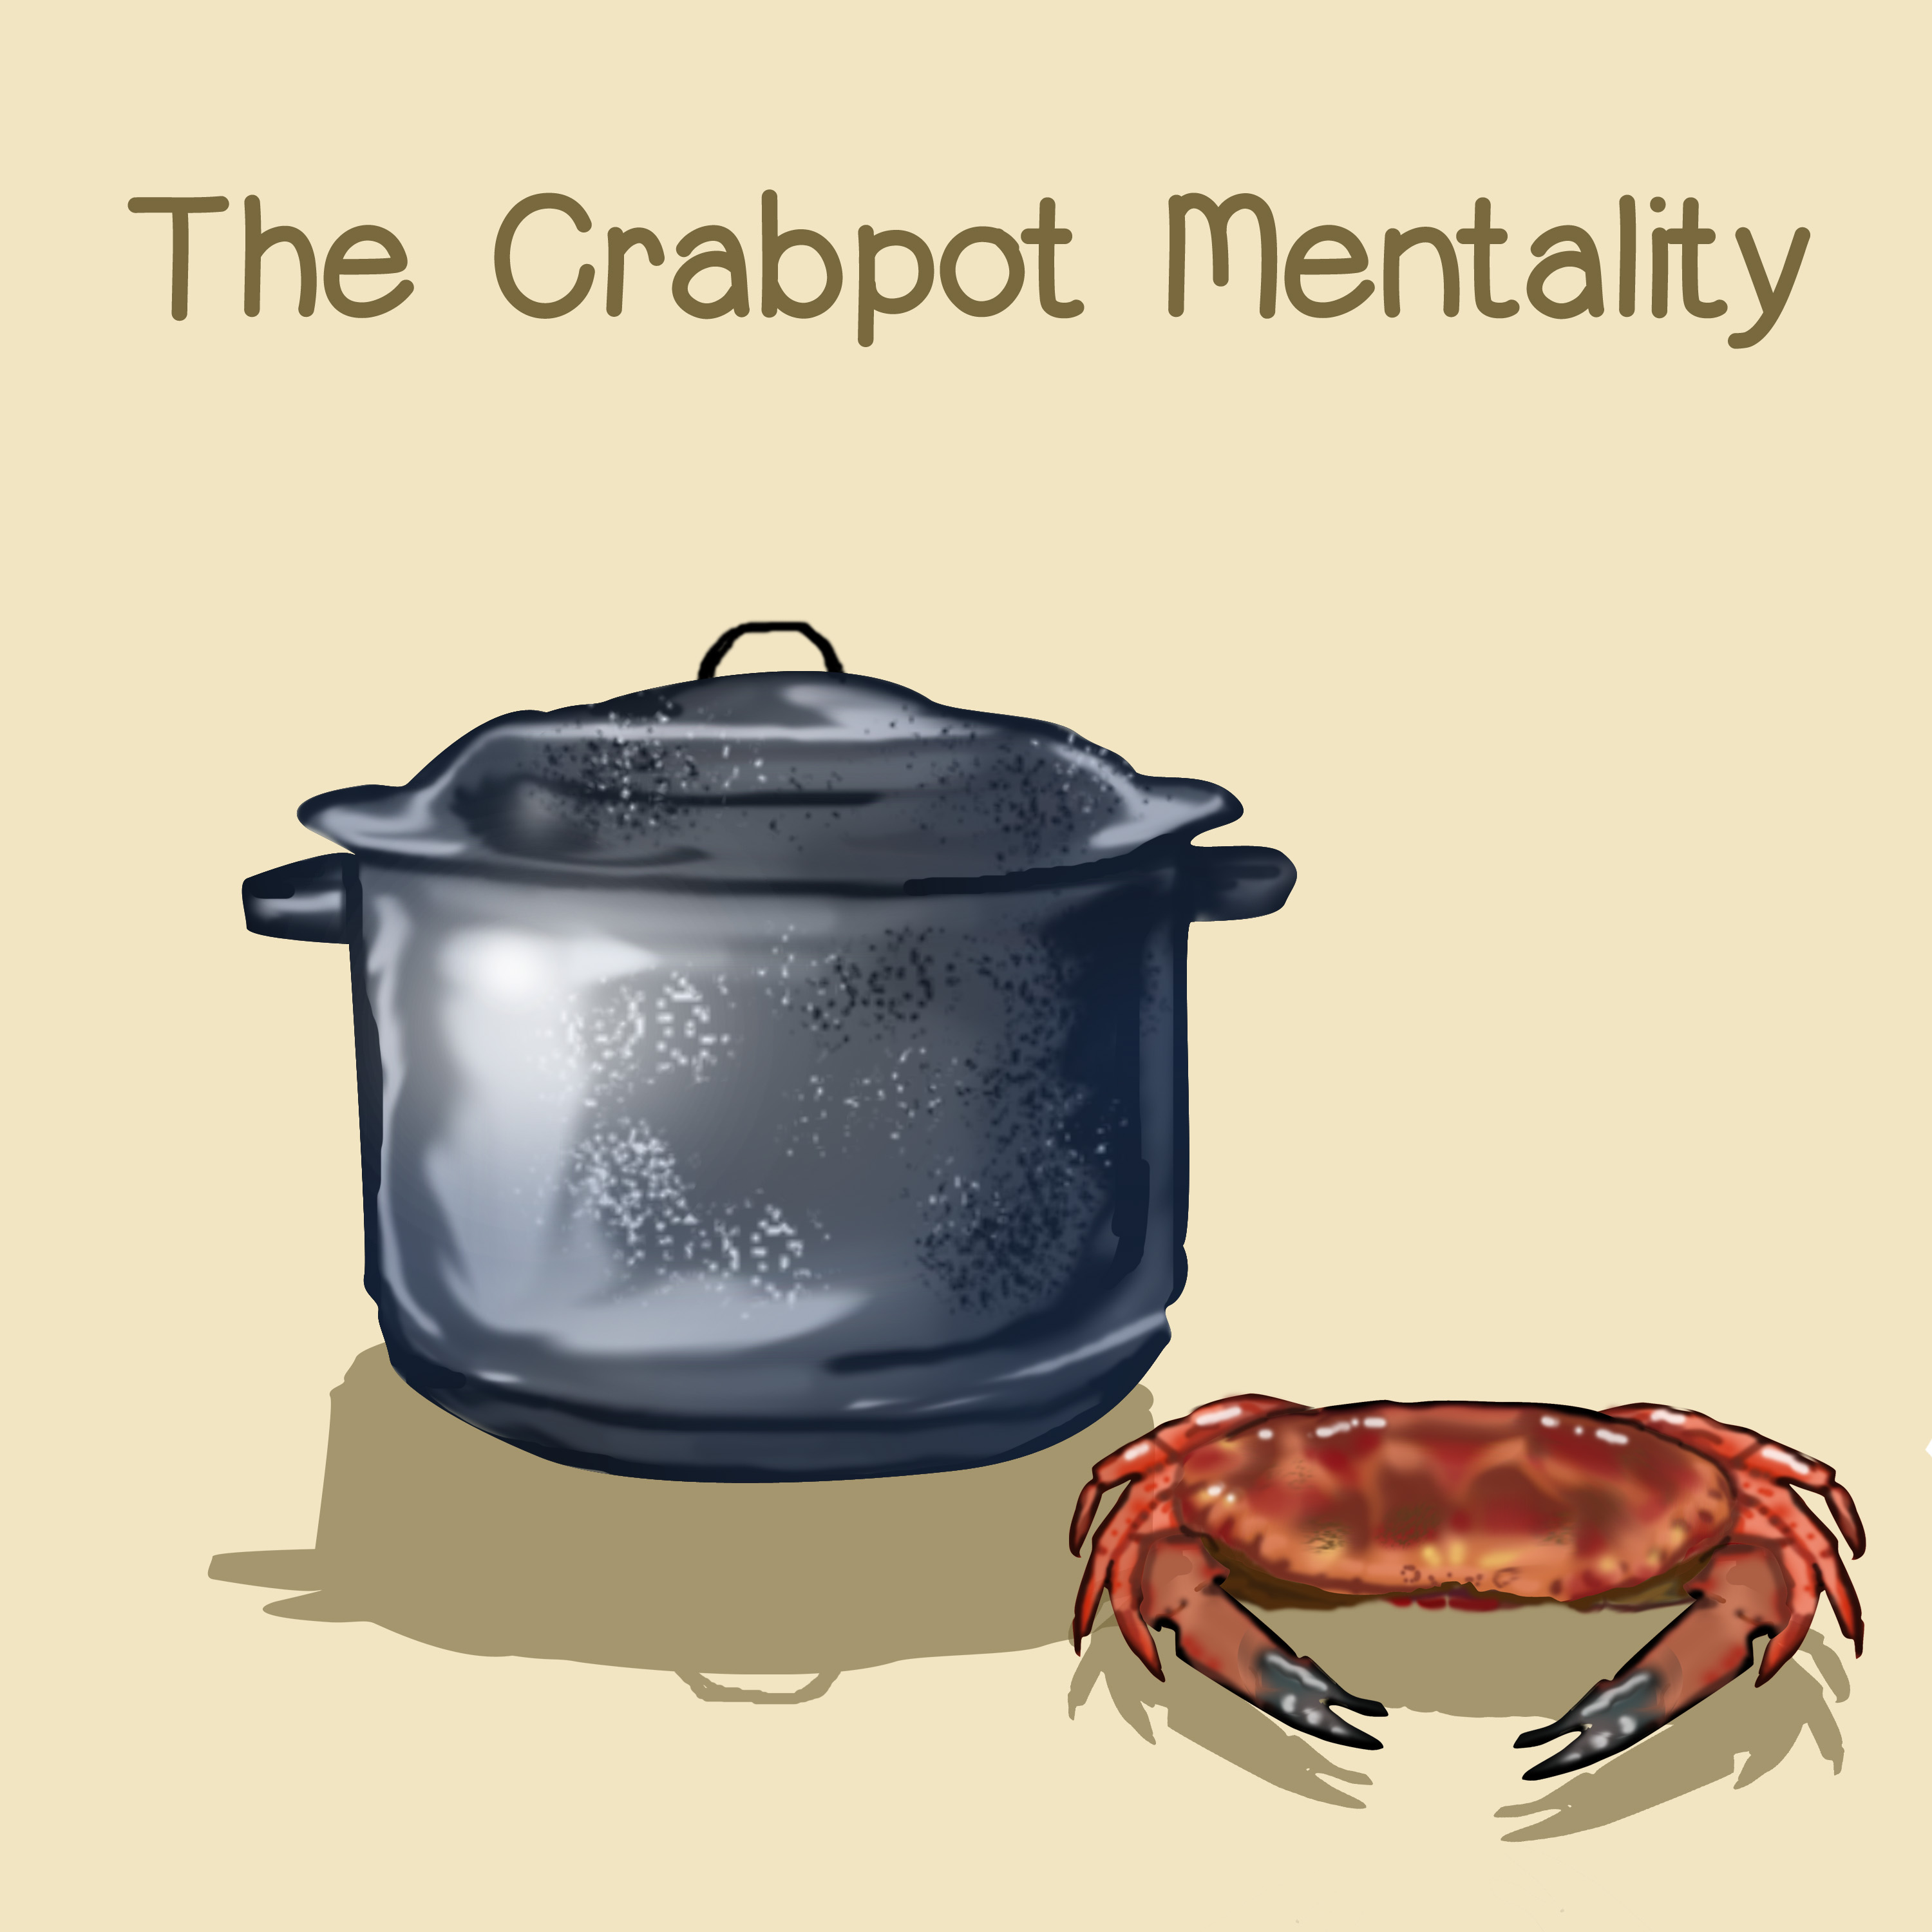 Crabpot Mentality